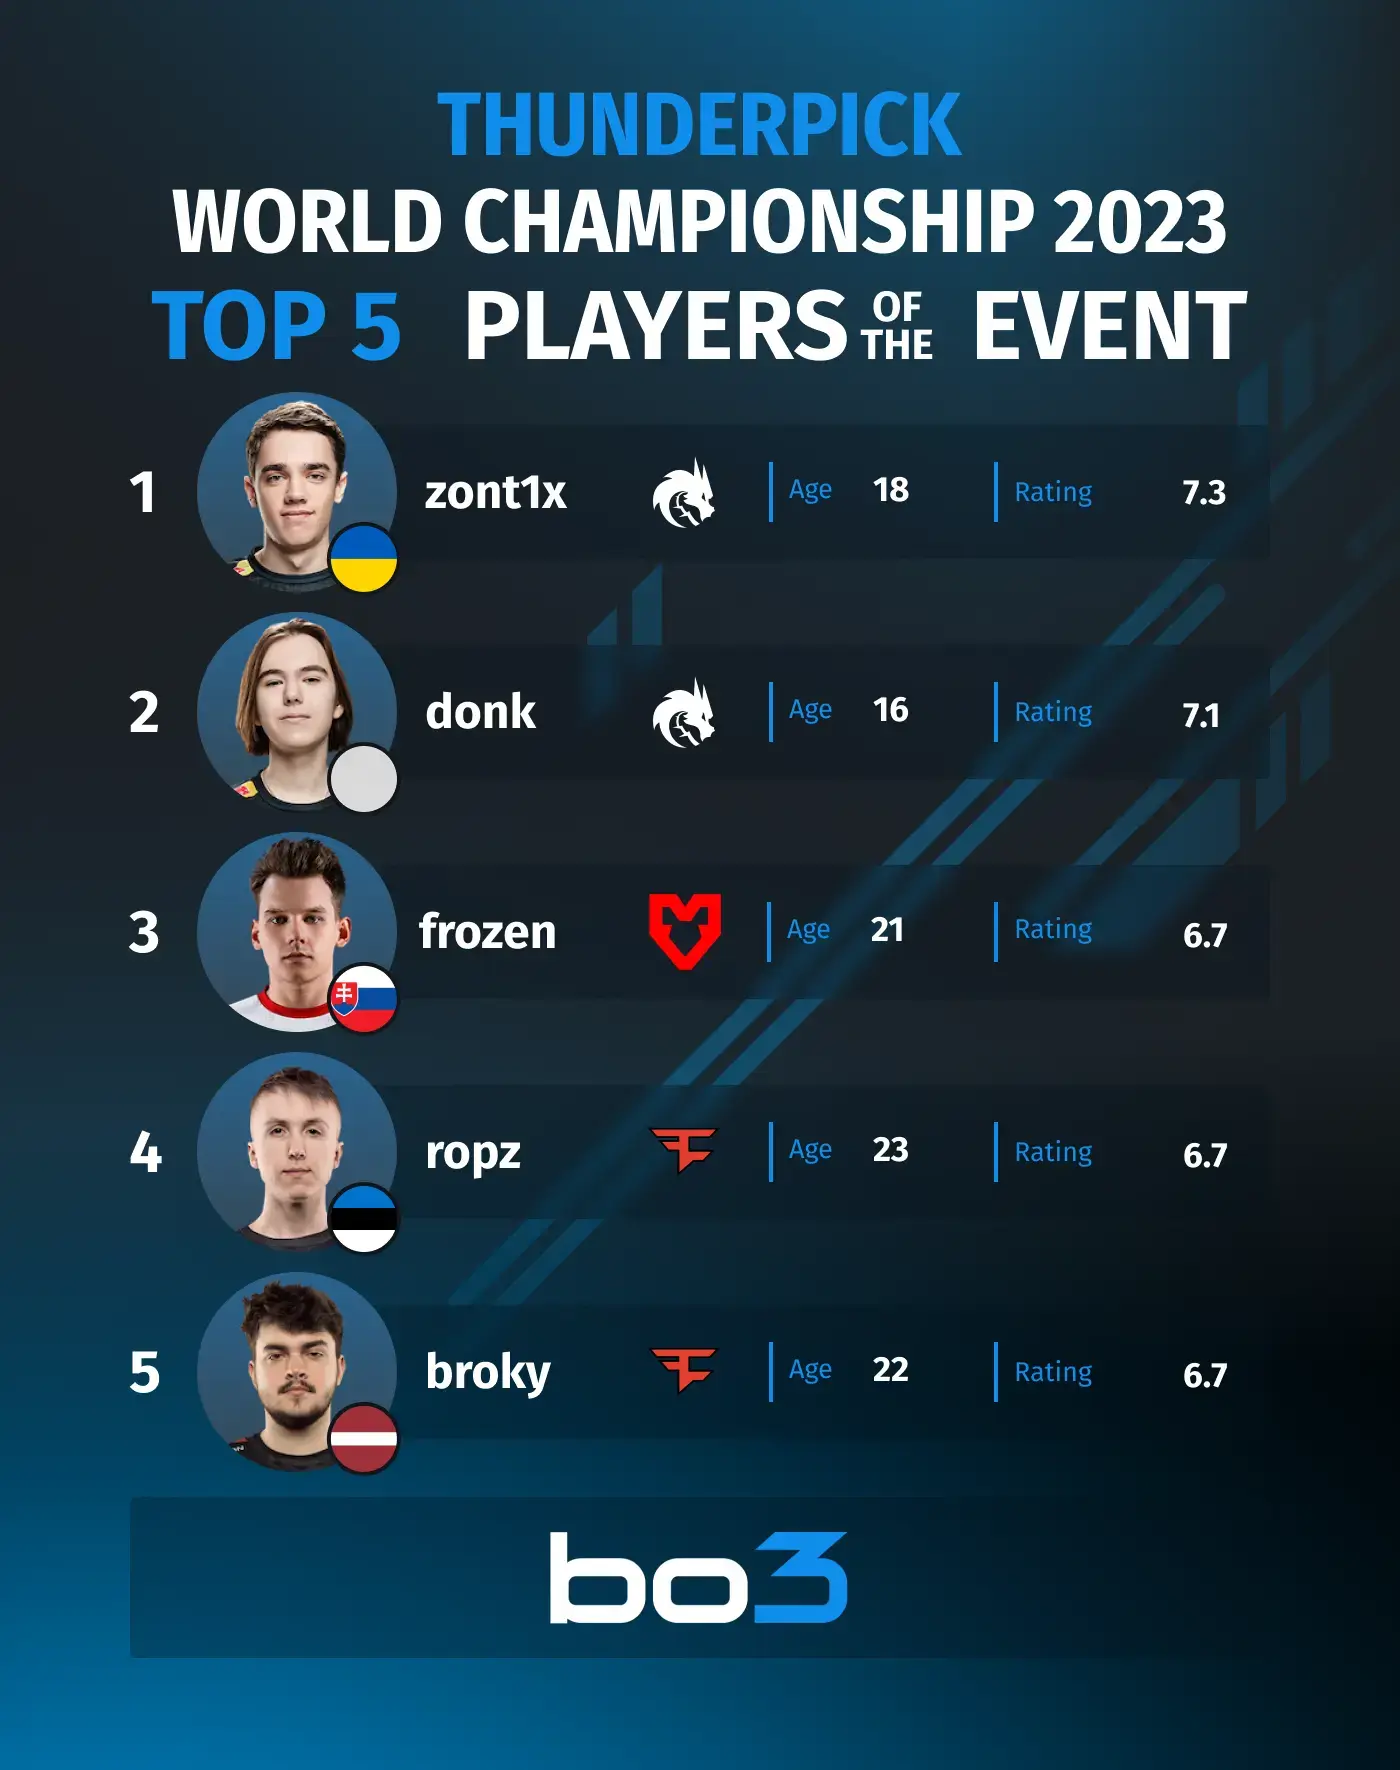 zont1x tornou-se o melhor jogador do Thunderpick World Championship 2023  por classificação — quem ocupou os top 5 lugares do torneio?